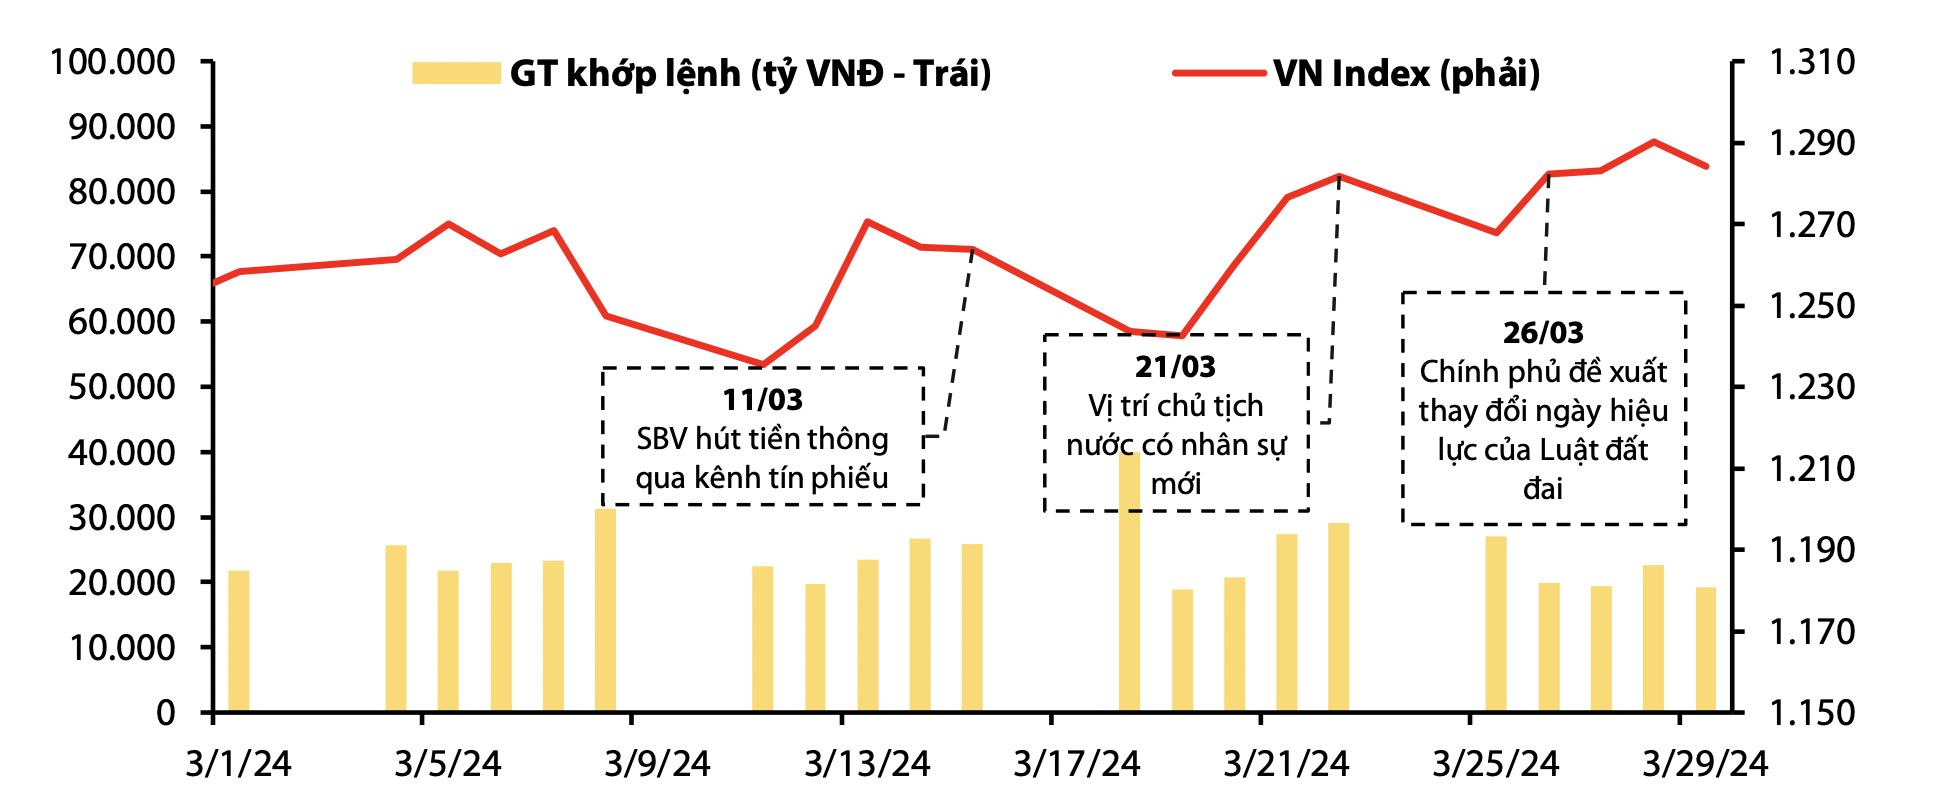 Áp lực tỷ giá đè nặng, VN-Index gặp cản lớn tại 1.320 điểm trong tháng 4